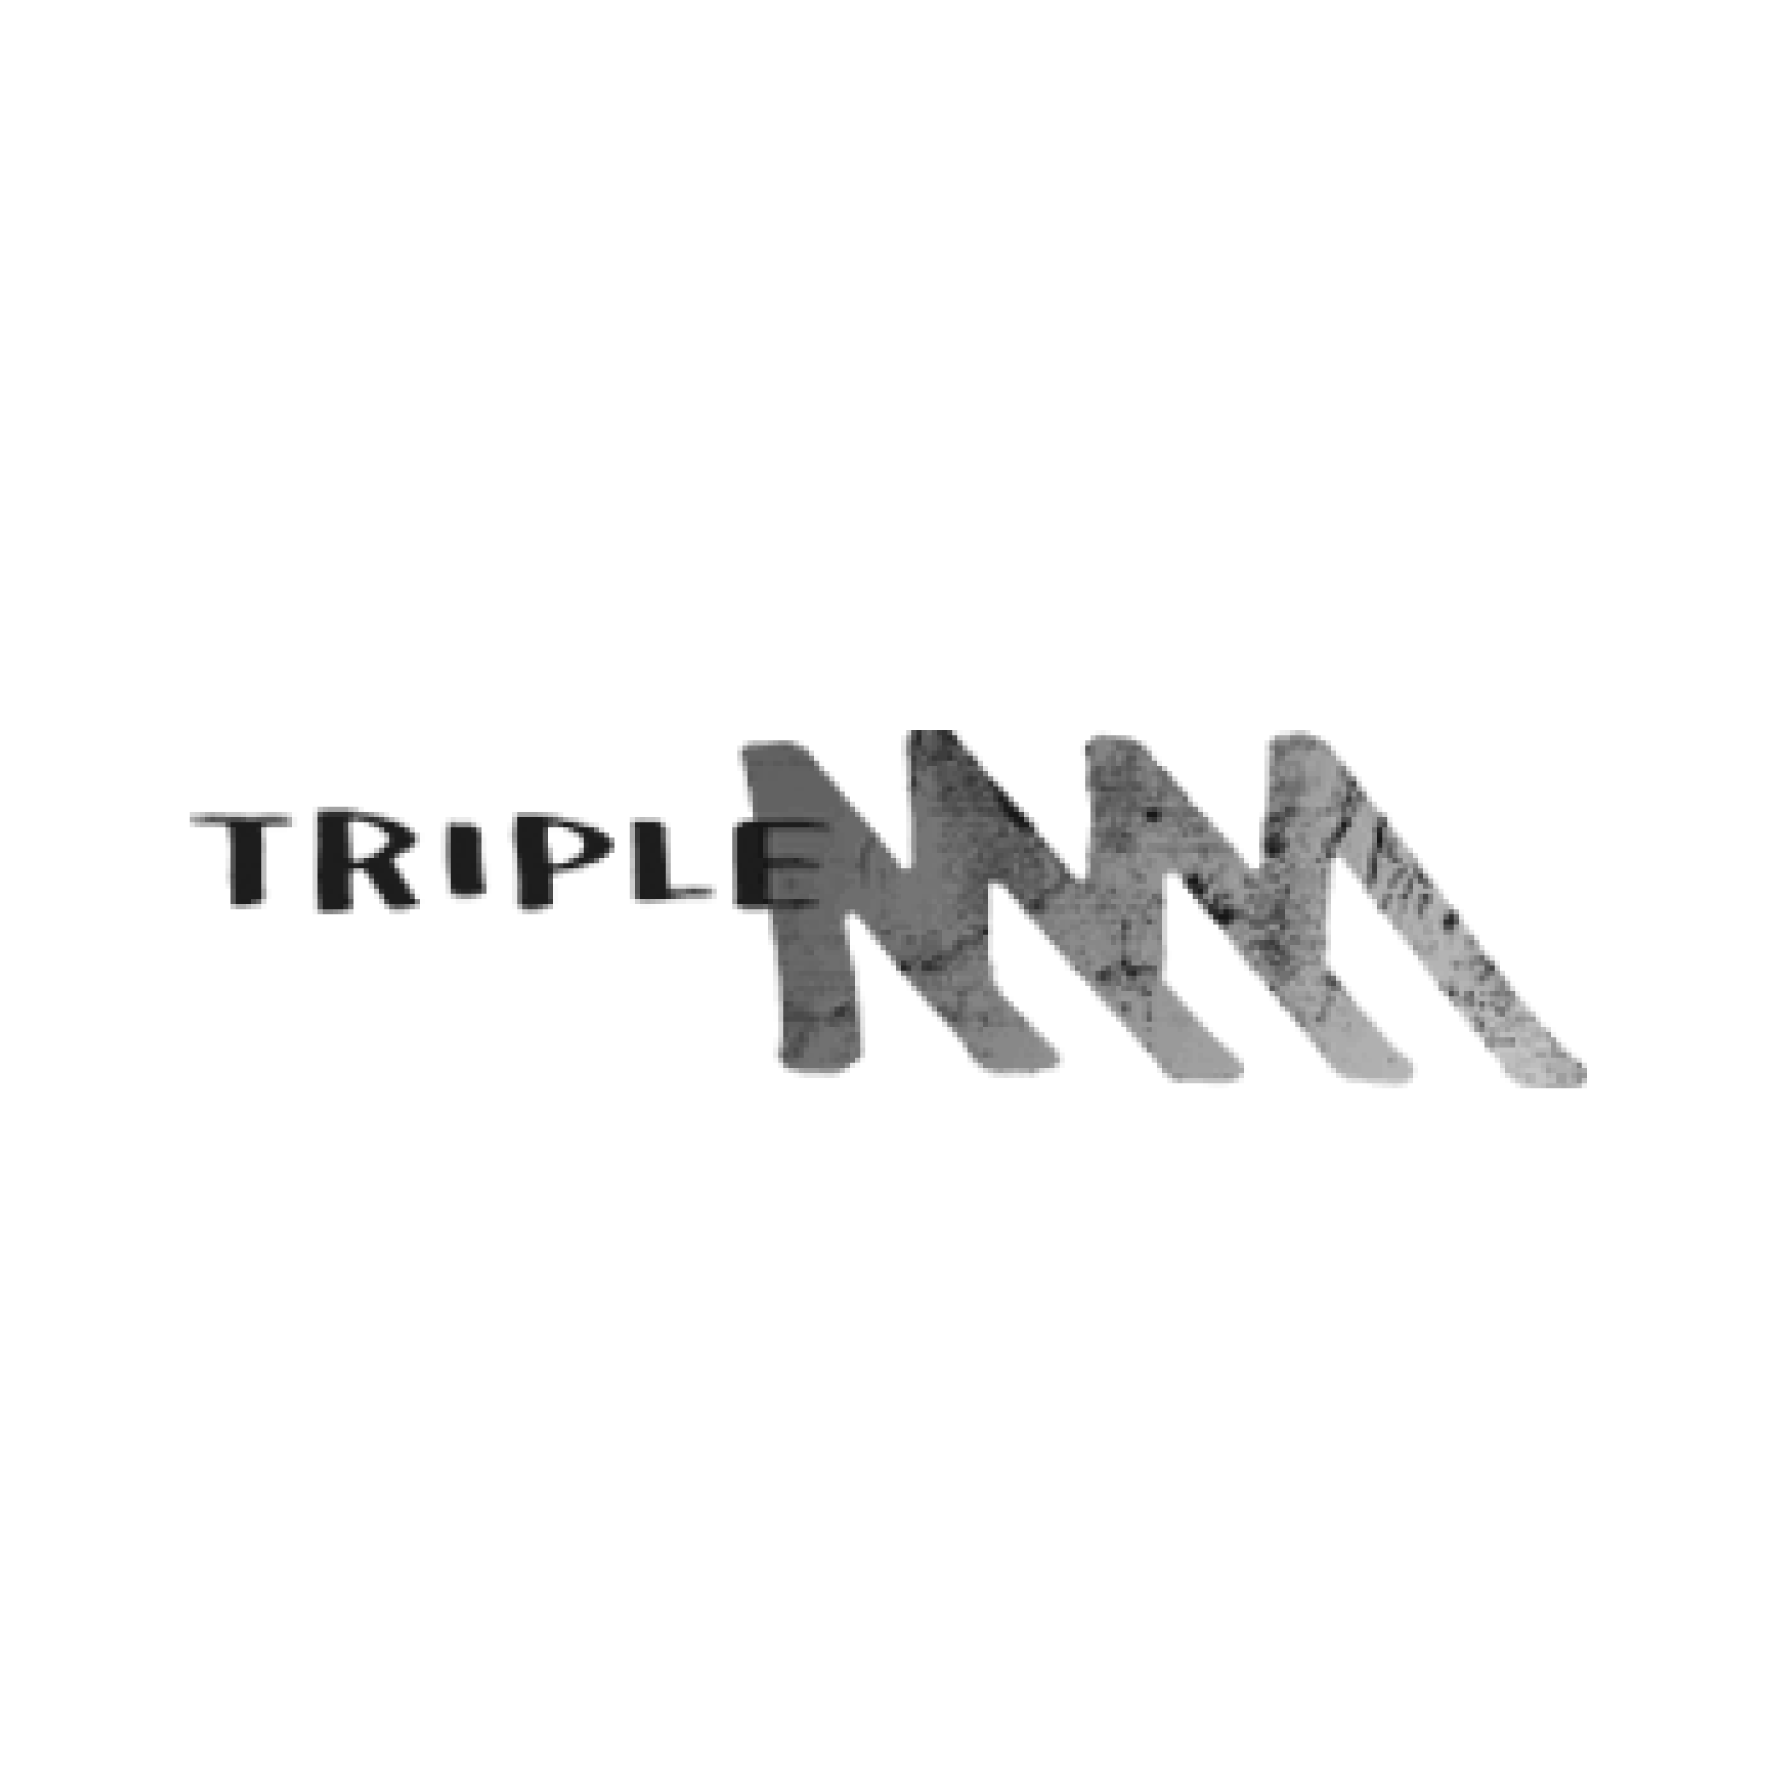 Triple M